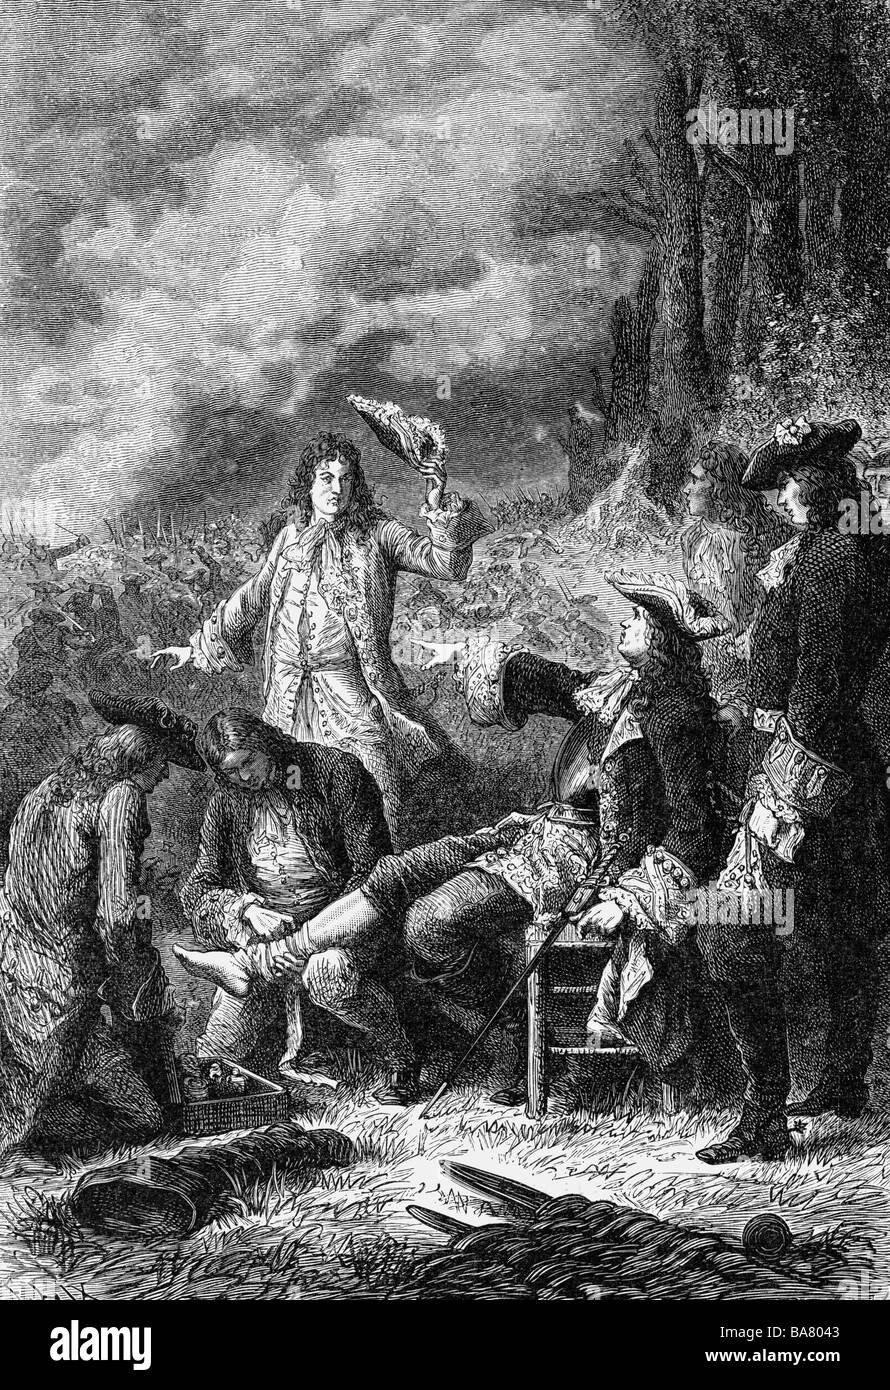 Villars, Claude Louis Hector duc de, 8.5.1653 - 17.6.1734, général français, blessé à la bataille de Malplaquet, 11.9.1709, gravure sur bois, XIXe siècle, , Banque D'Images